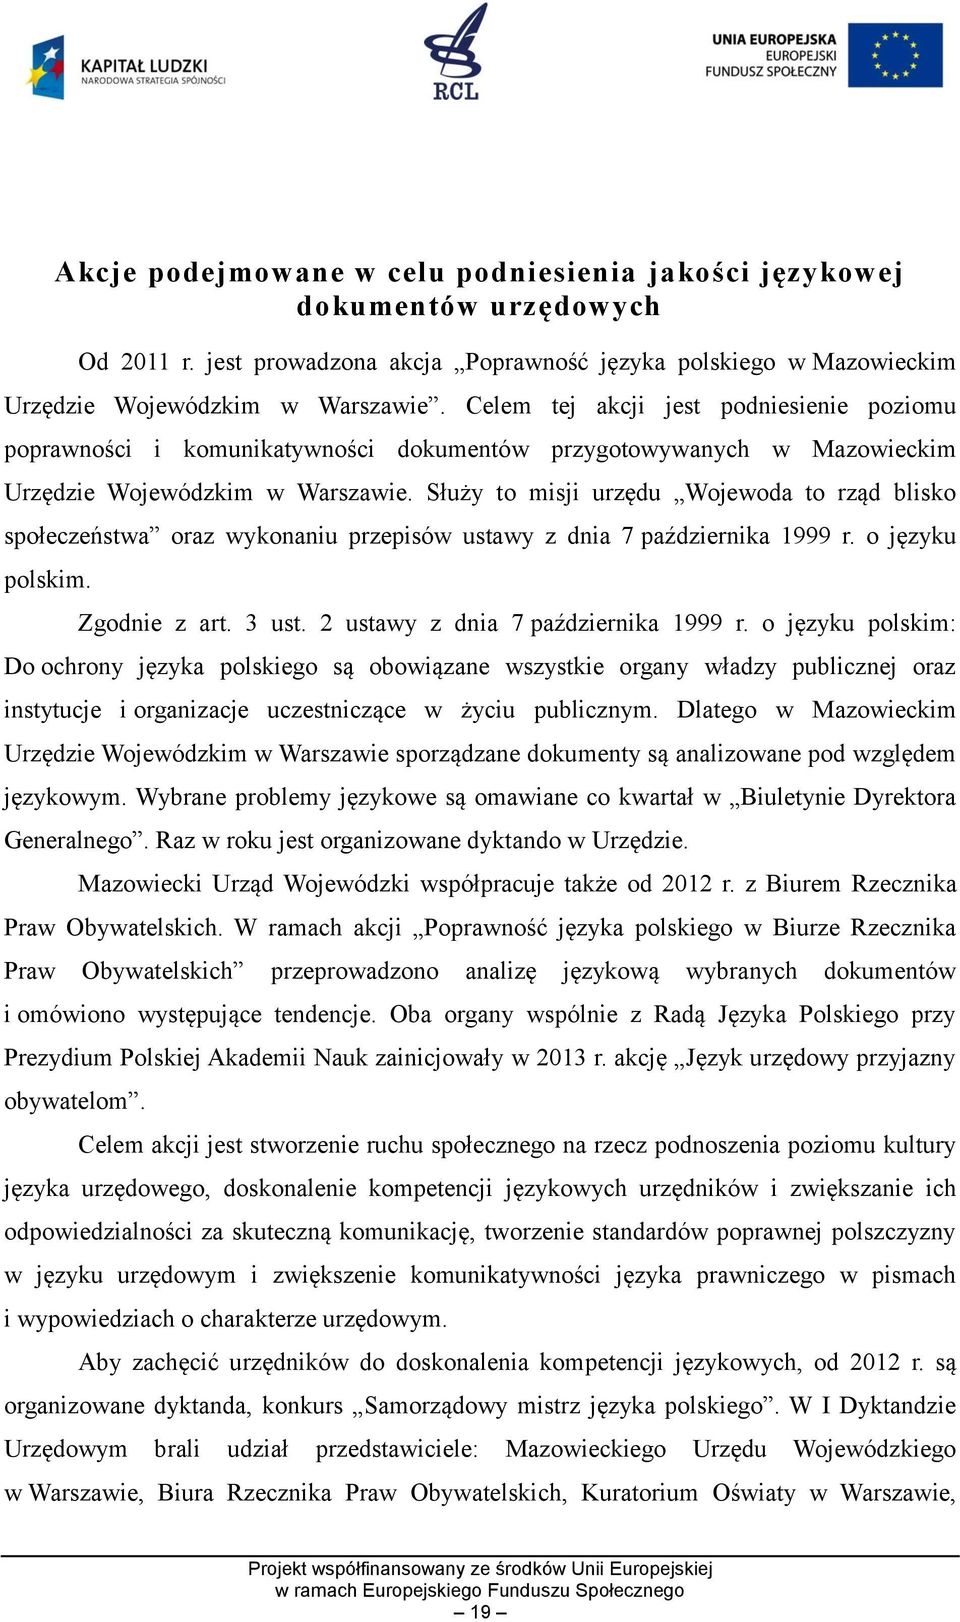 Służy to misji urzędu Wojewoda to rząd blisko społeczeństwa oraz wykonaniu przepisów ustawy z dnia 7 października 1999 r. o języku polskim. Zgodnie z art. 3 ust. 2 ustawy z dnia 7 października 1999 r.